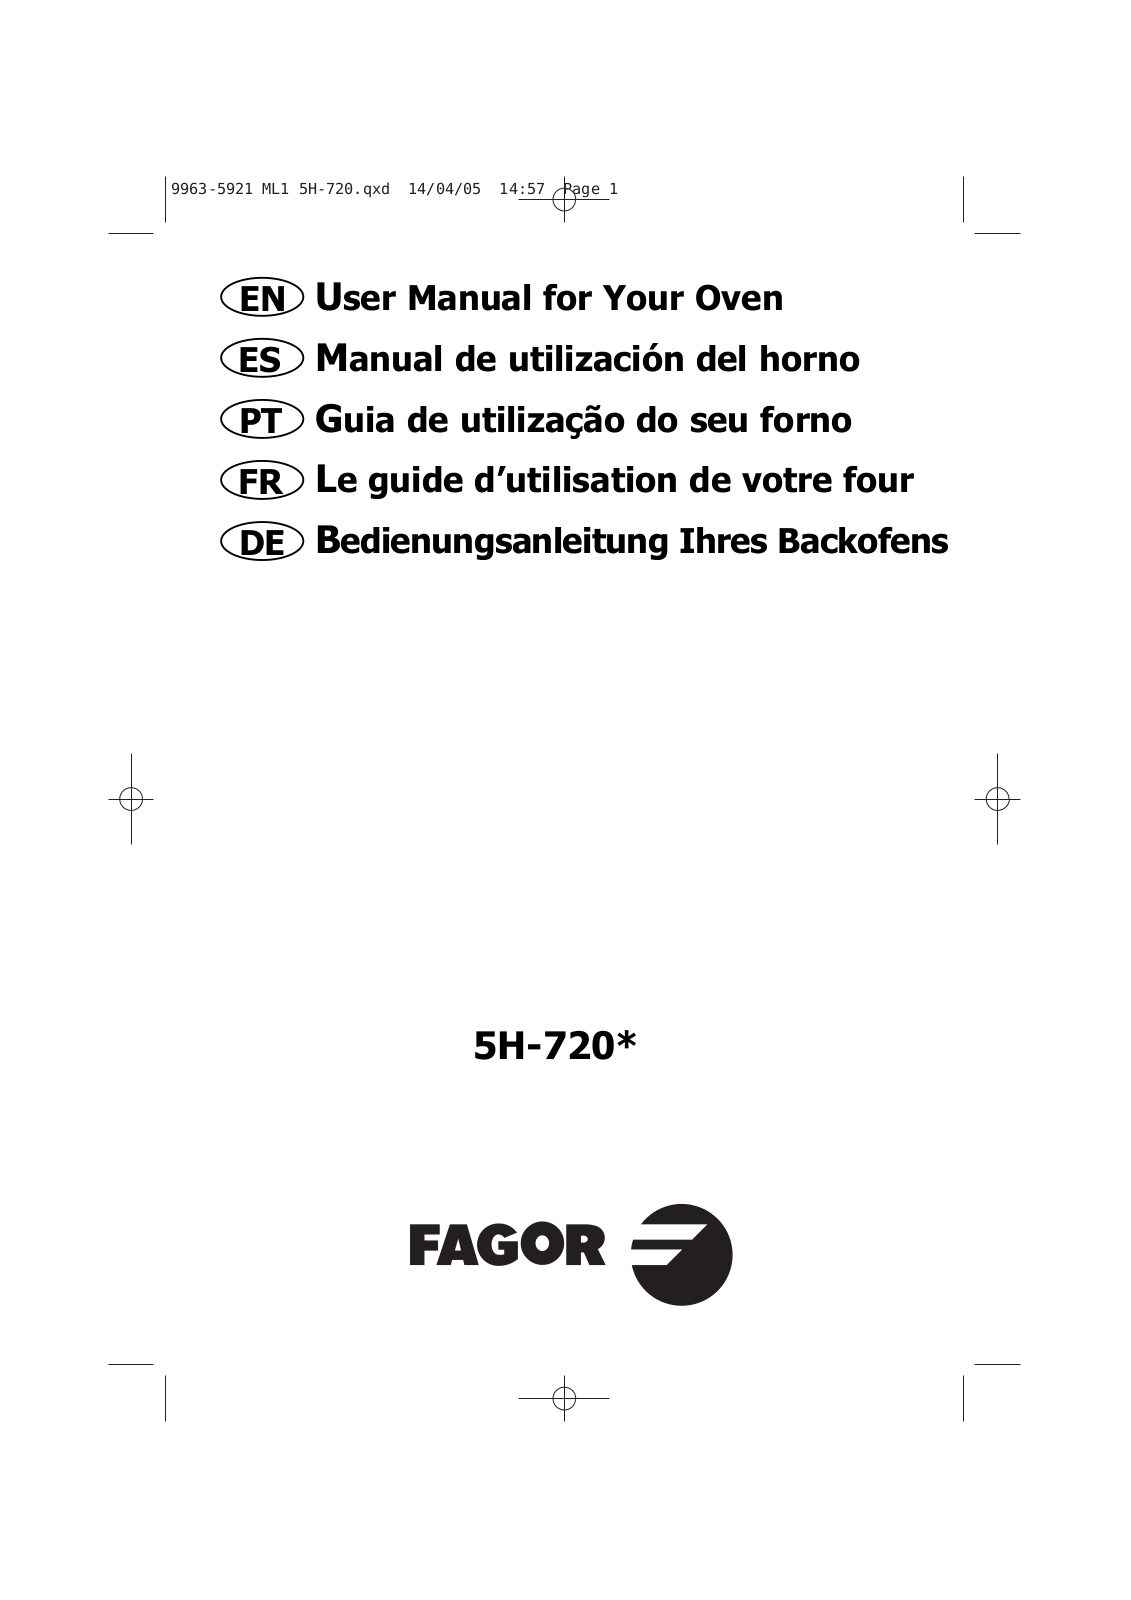 FAGOR H720, H-720X, H-720N, H-720B User Manual